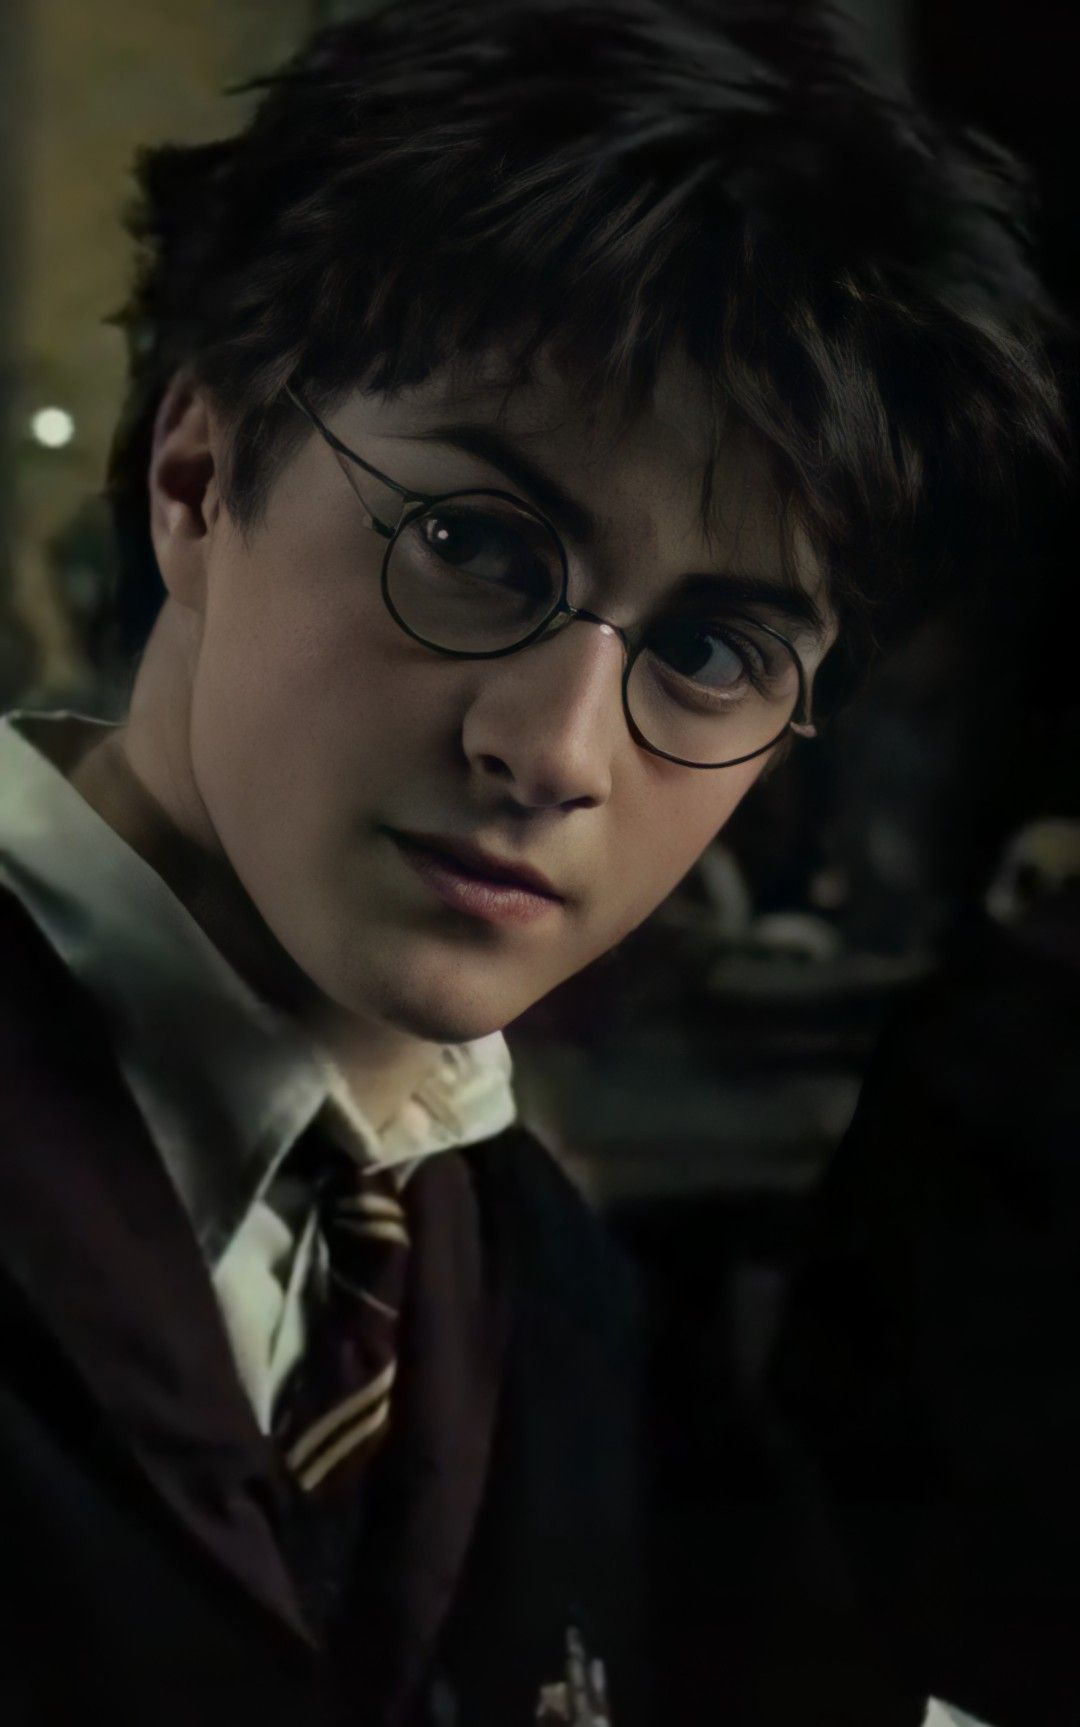 Hình ảnh Harry Potter đẹp chất lượng cao chân thực nhất